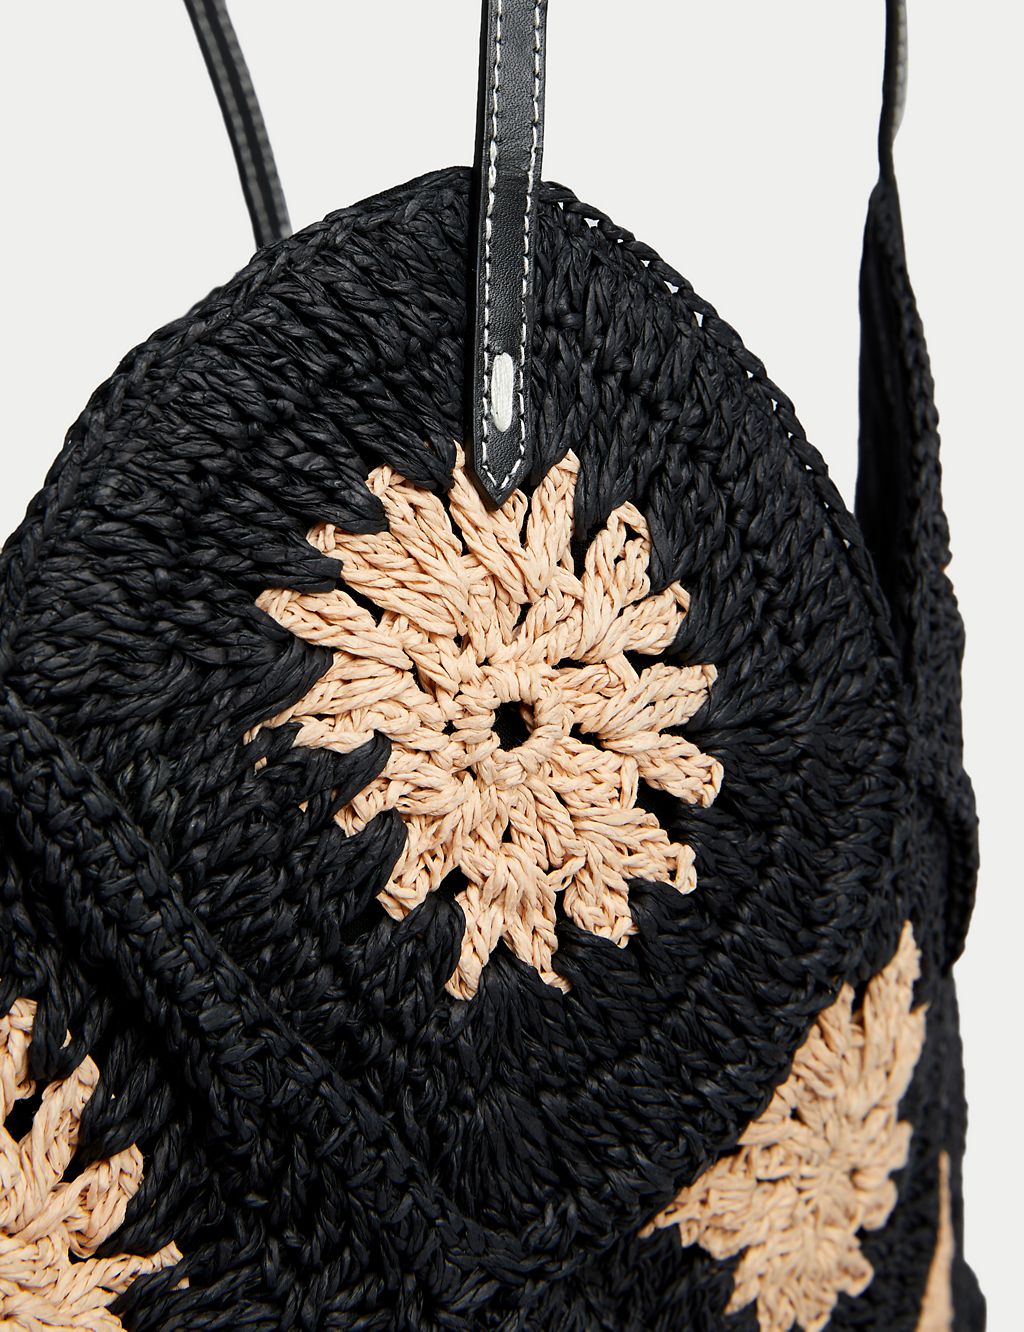 Crochet Straw Shoulder Bag 2 of 5